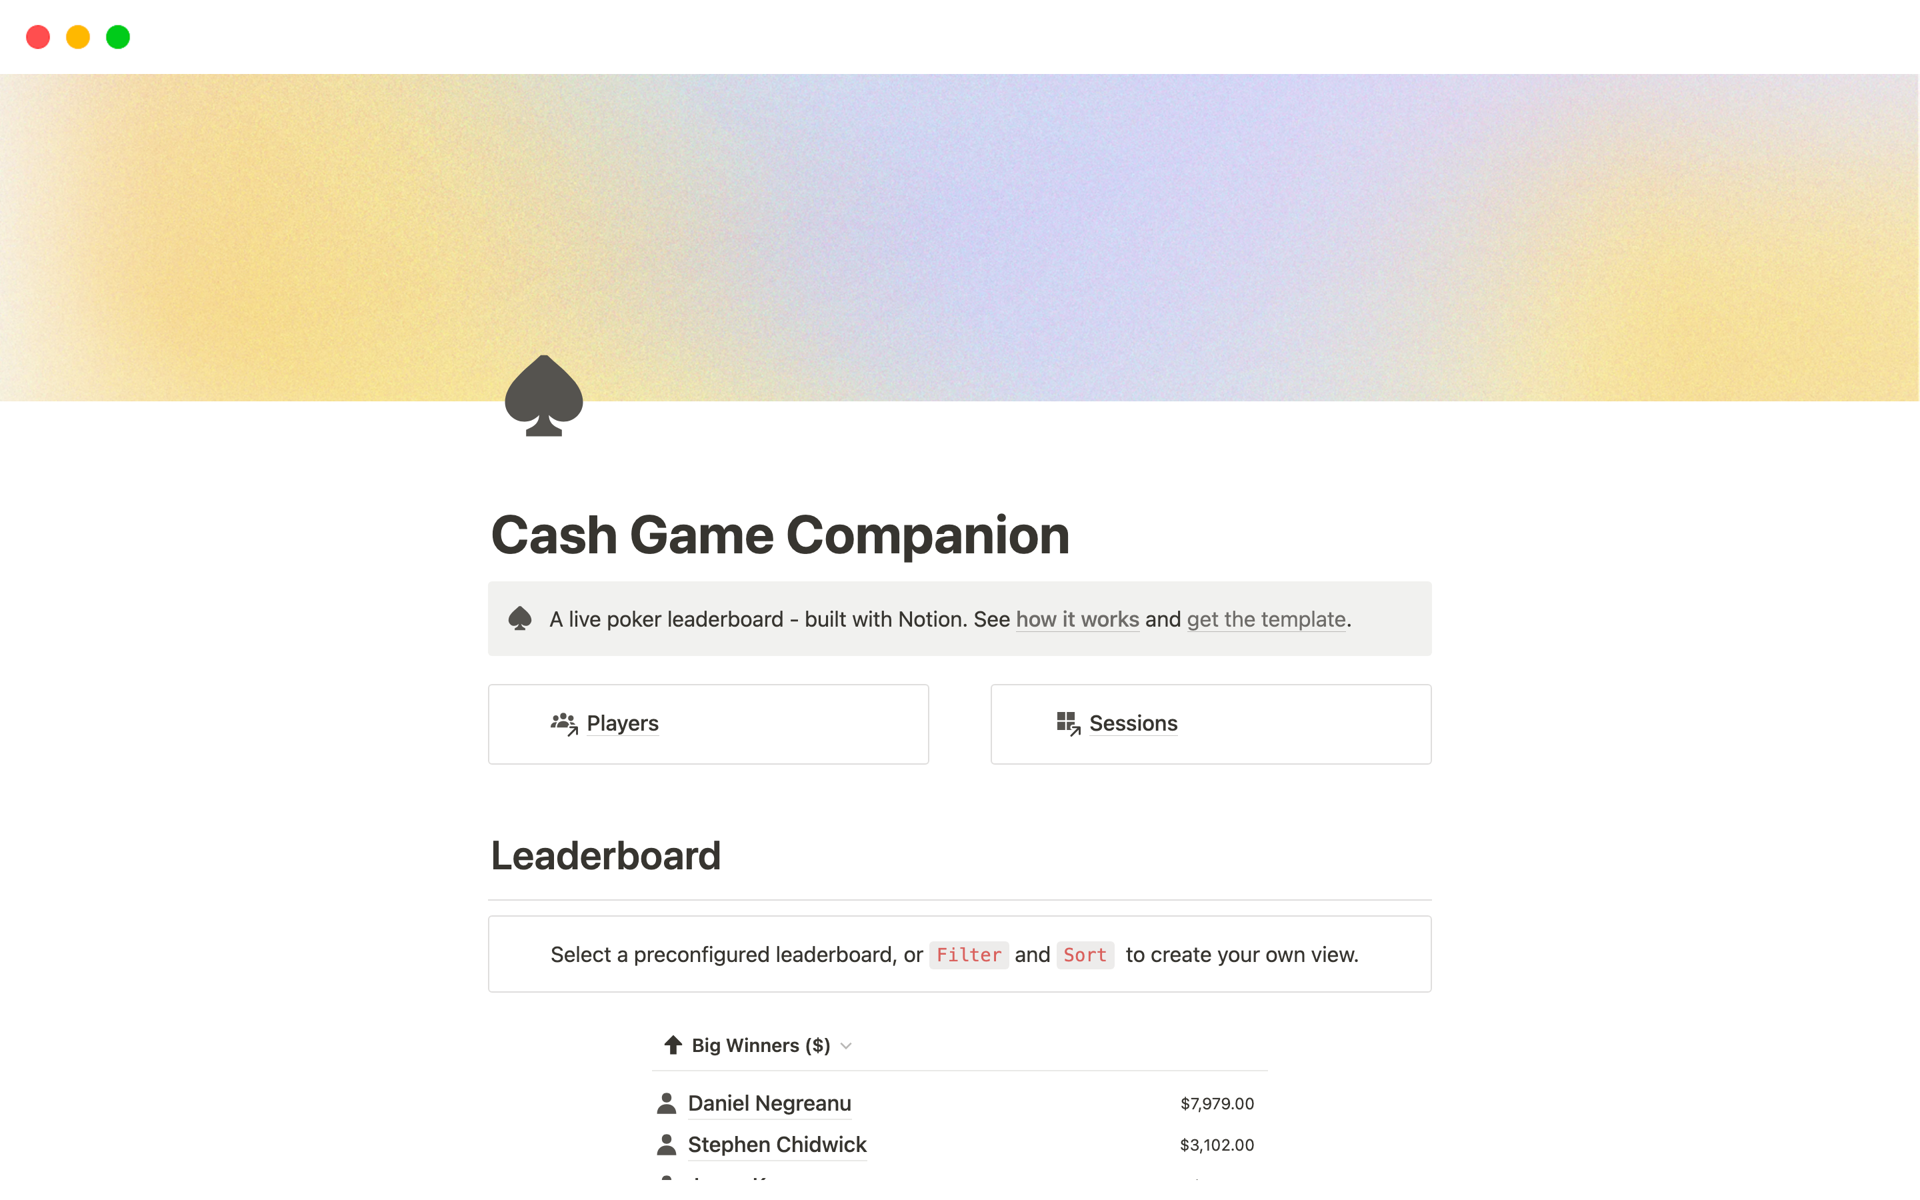 Vista previa de plantilla para Cash Game Companion